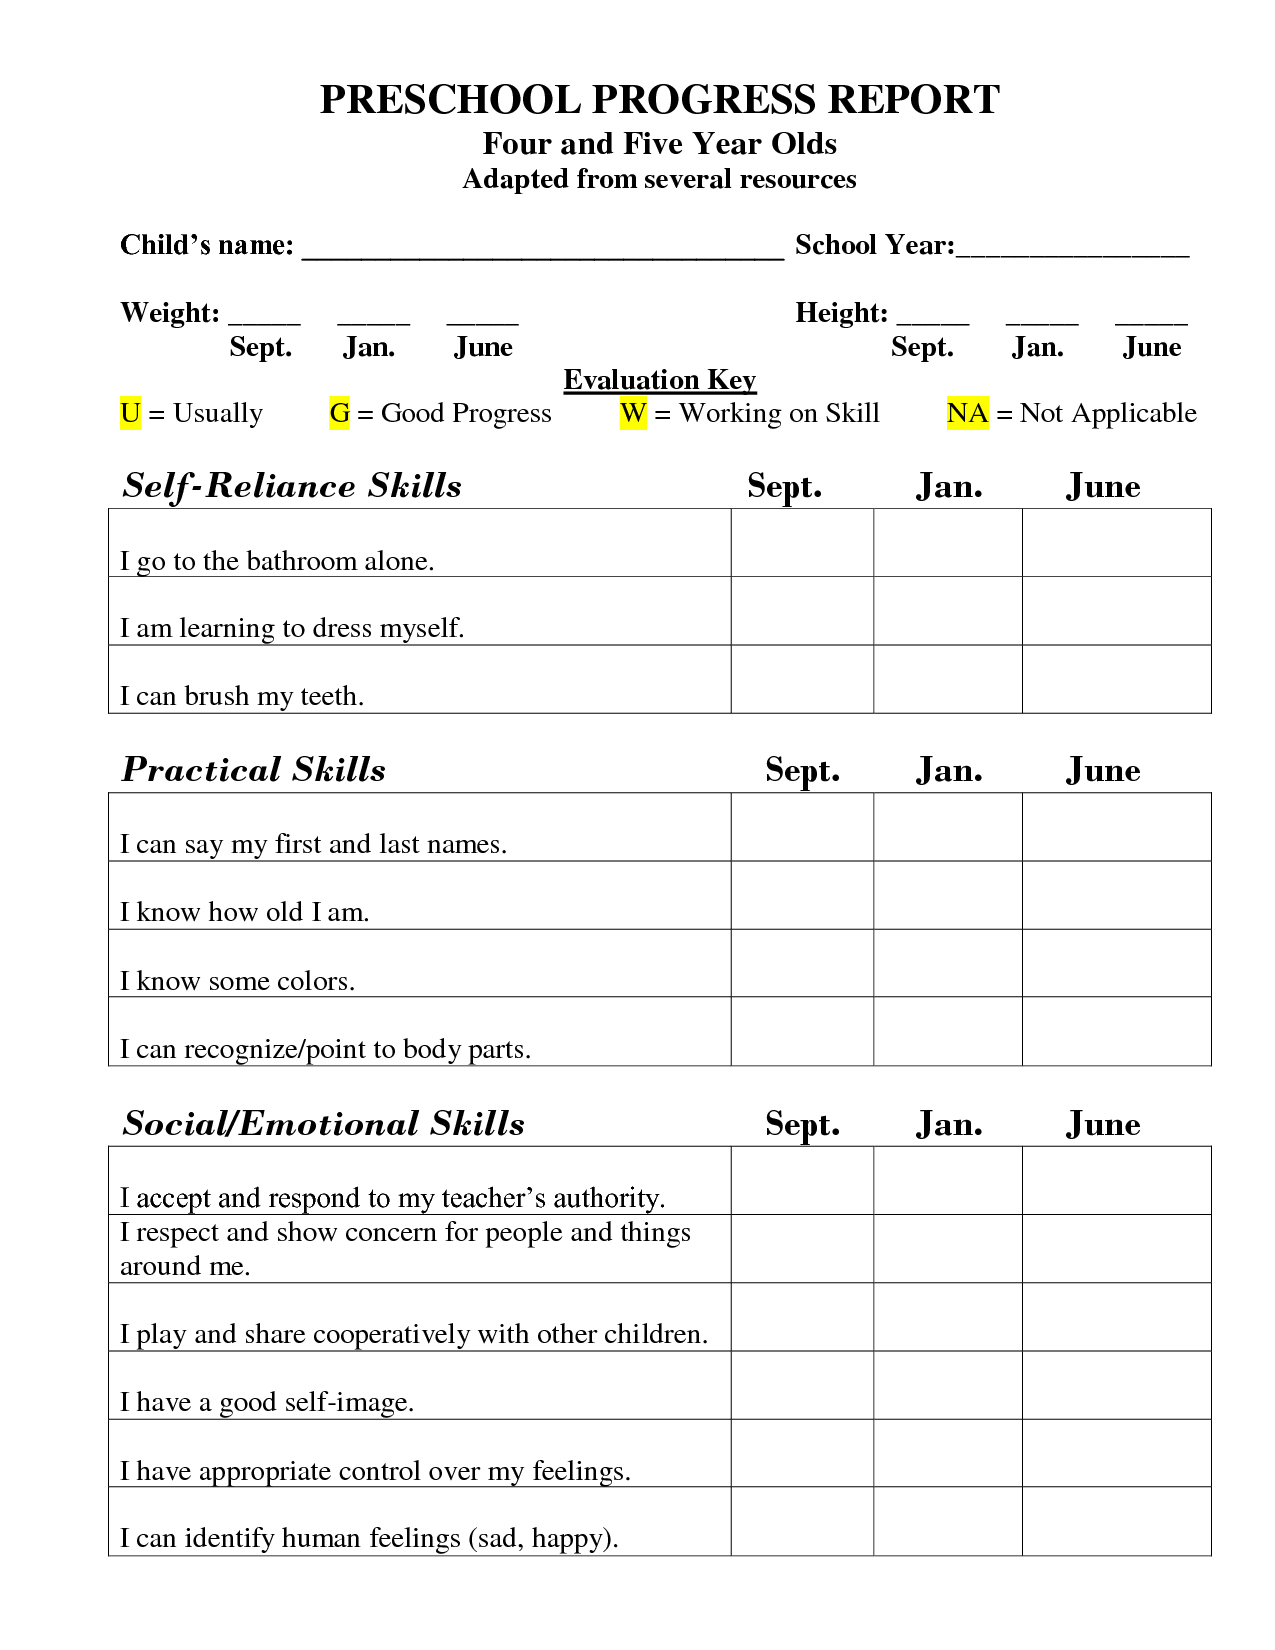 Preschool Progress Report Template | School Report Card With Regard To Preschool Progress Report Template